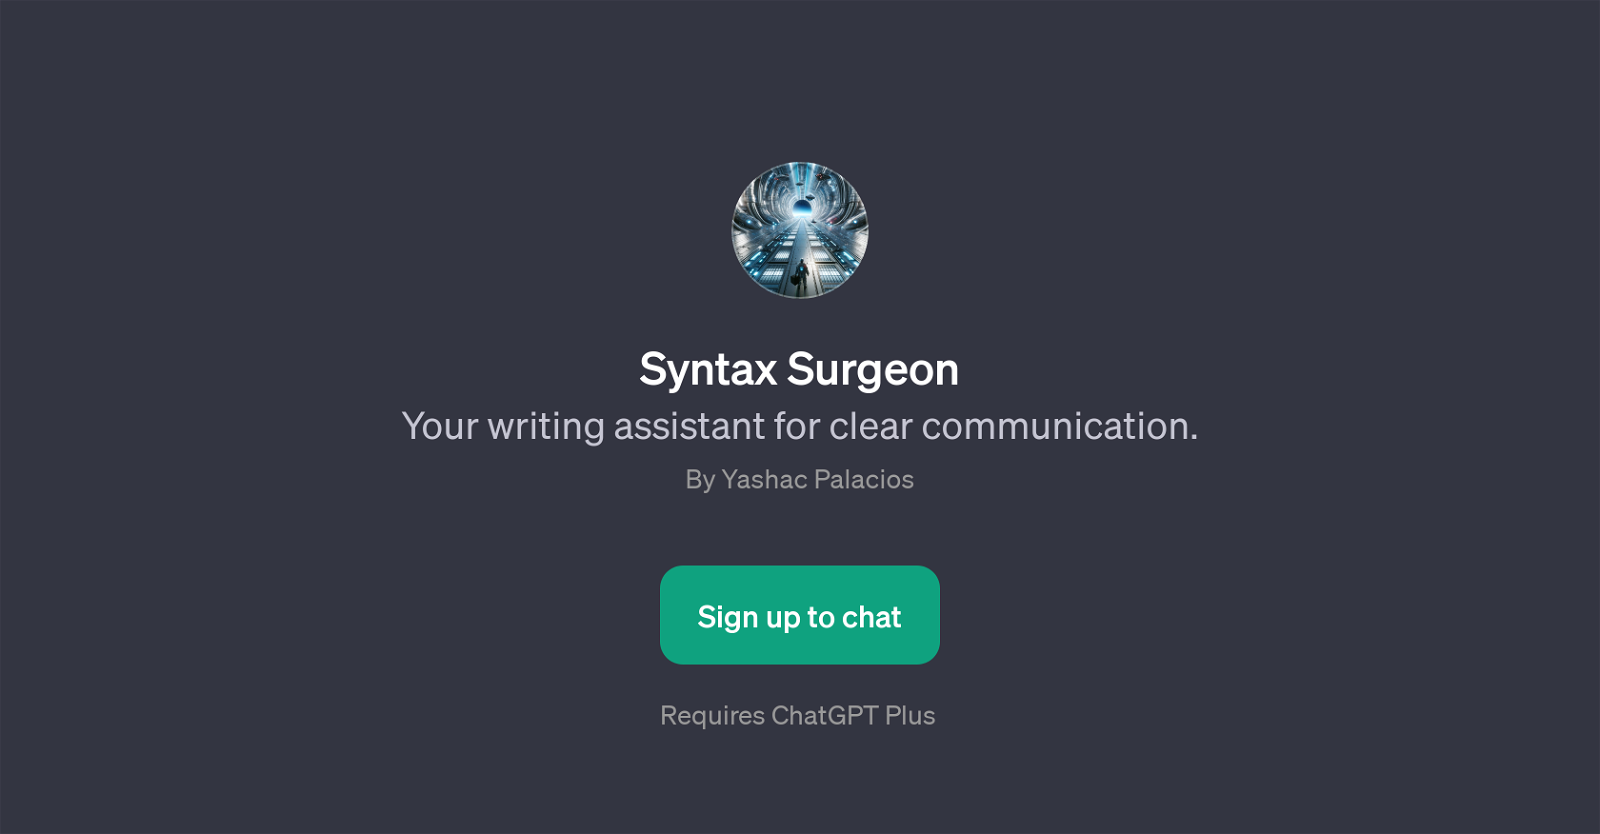 Syntax Surgeon website